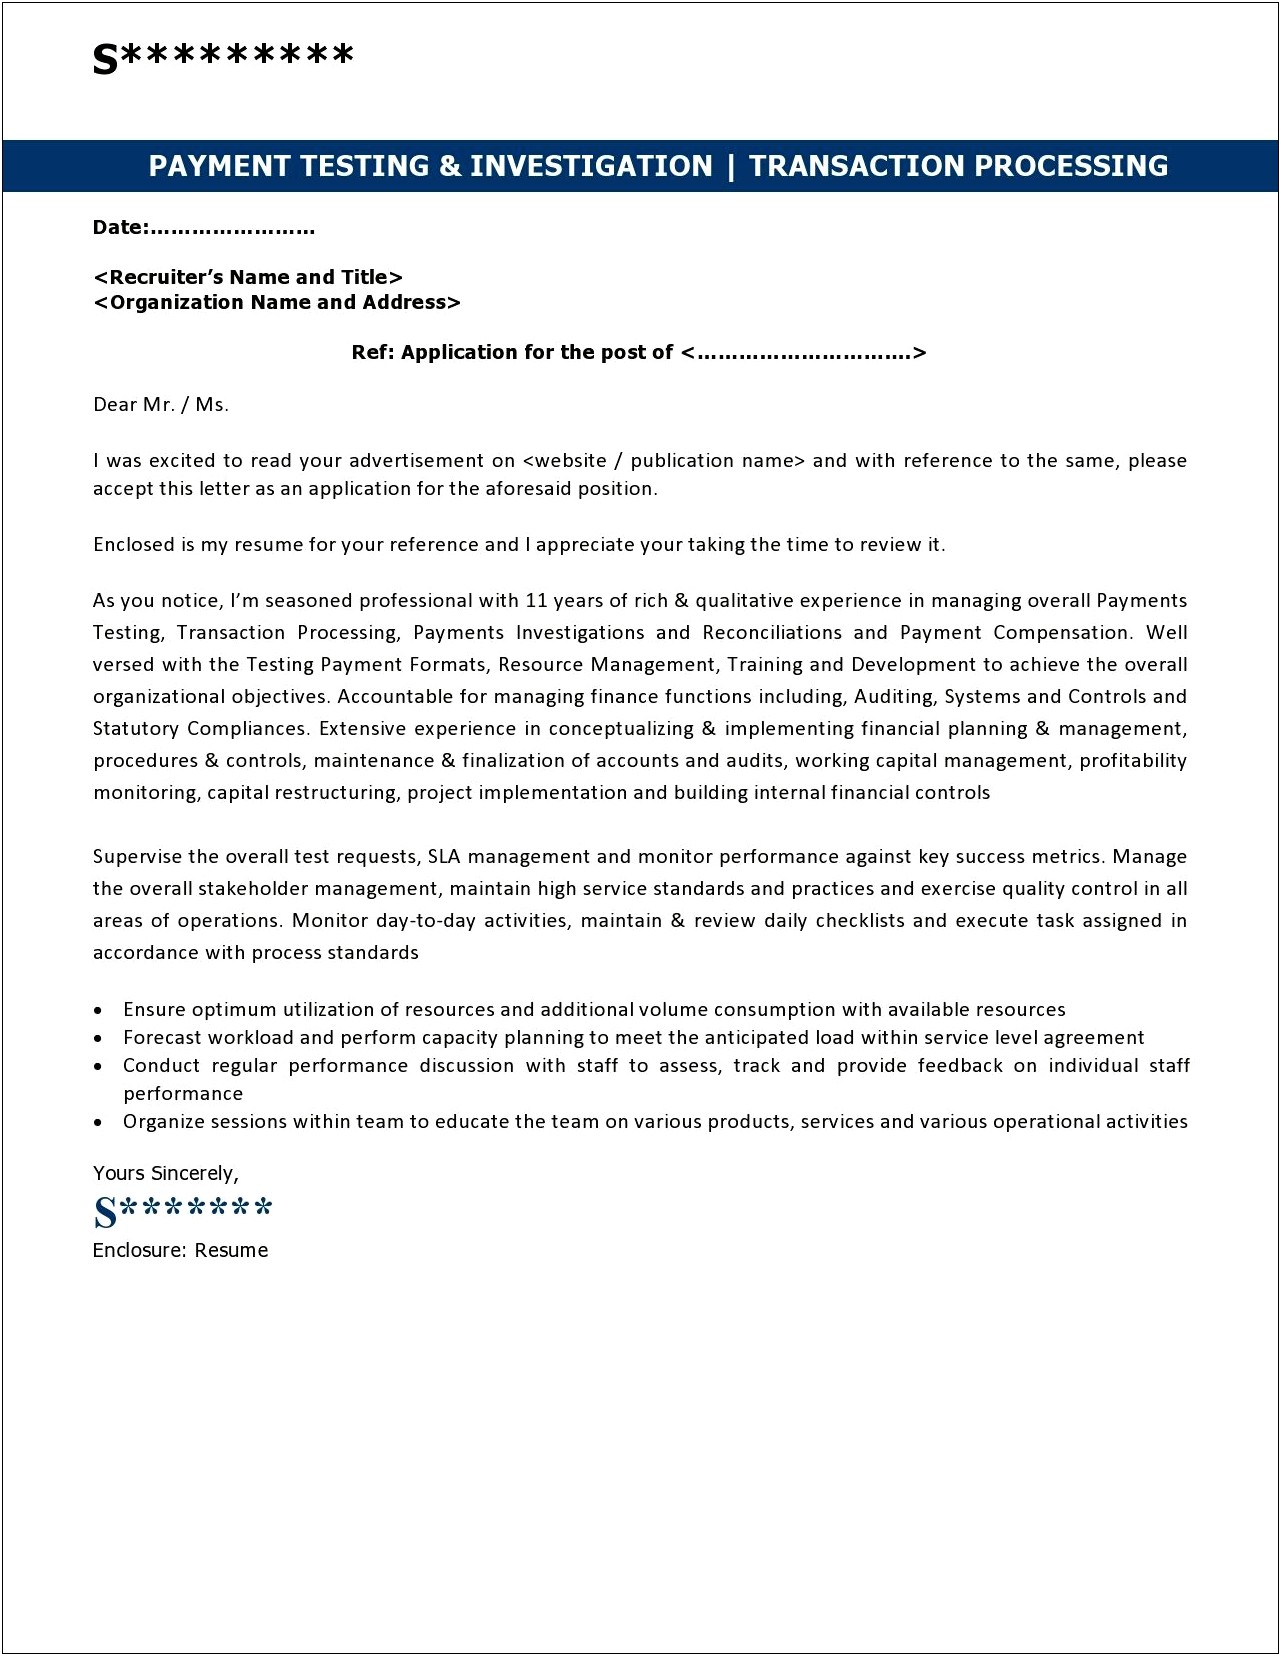 Sample Of An Employer Resume Response Letter